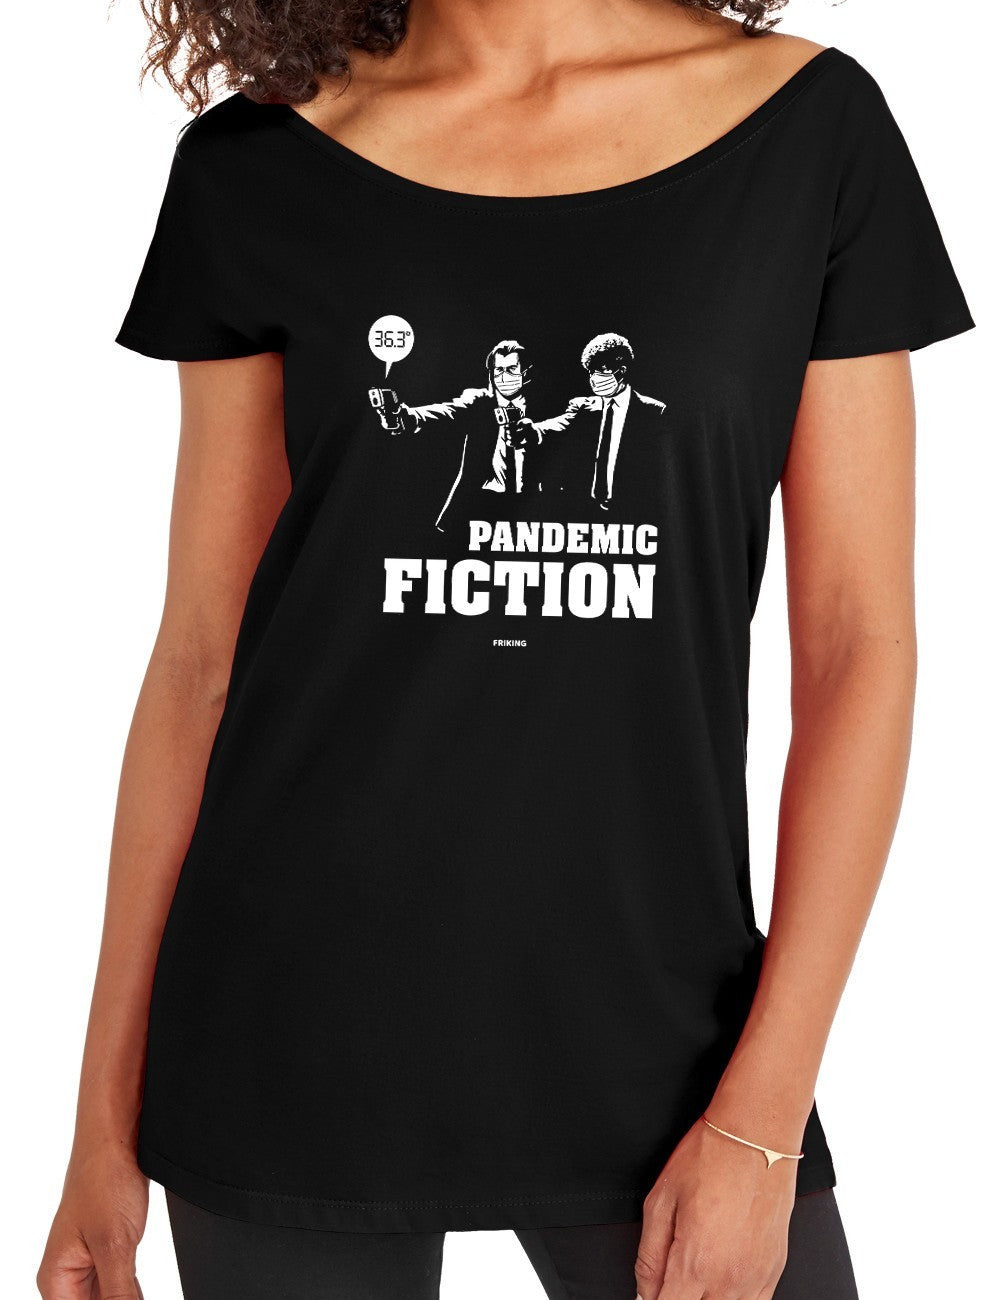  Pandemic Fiction